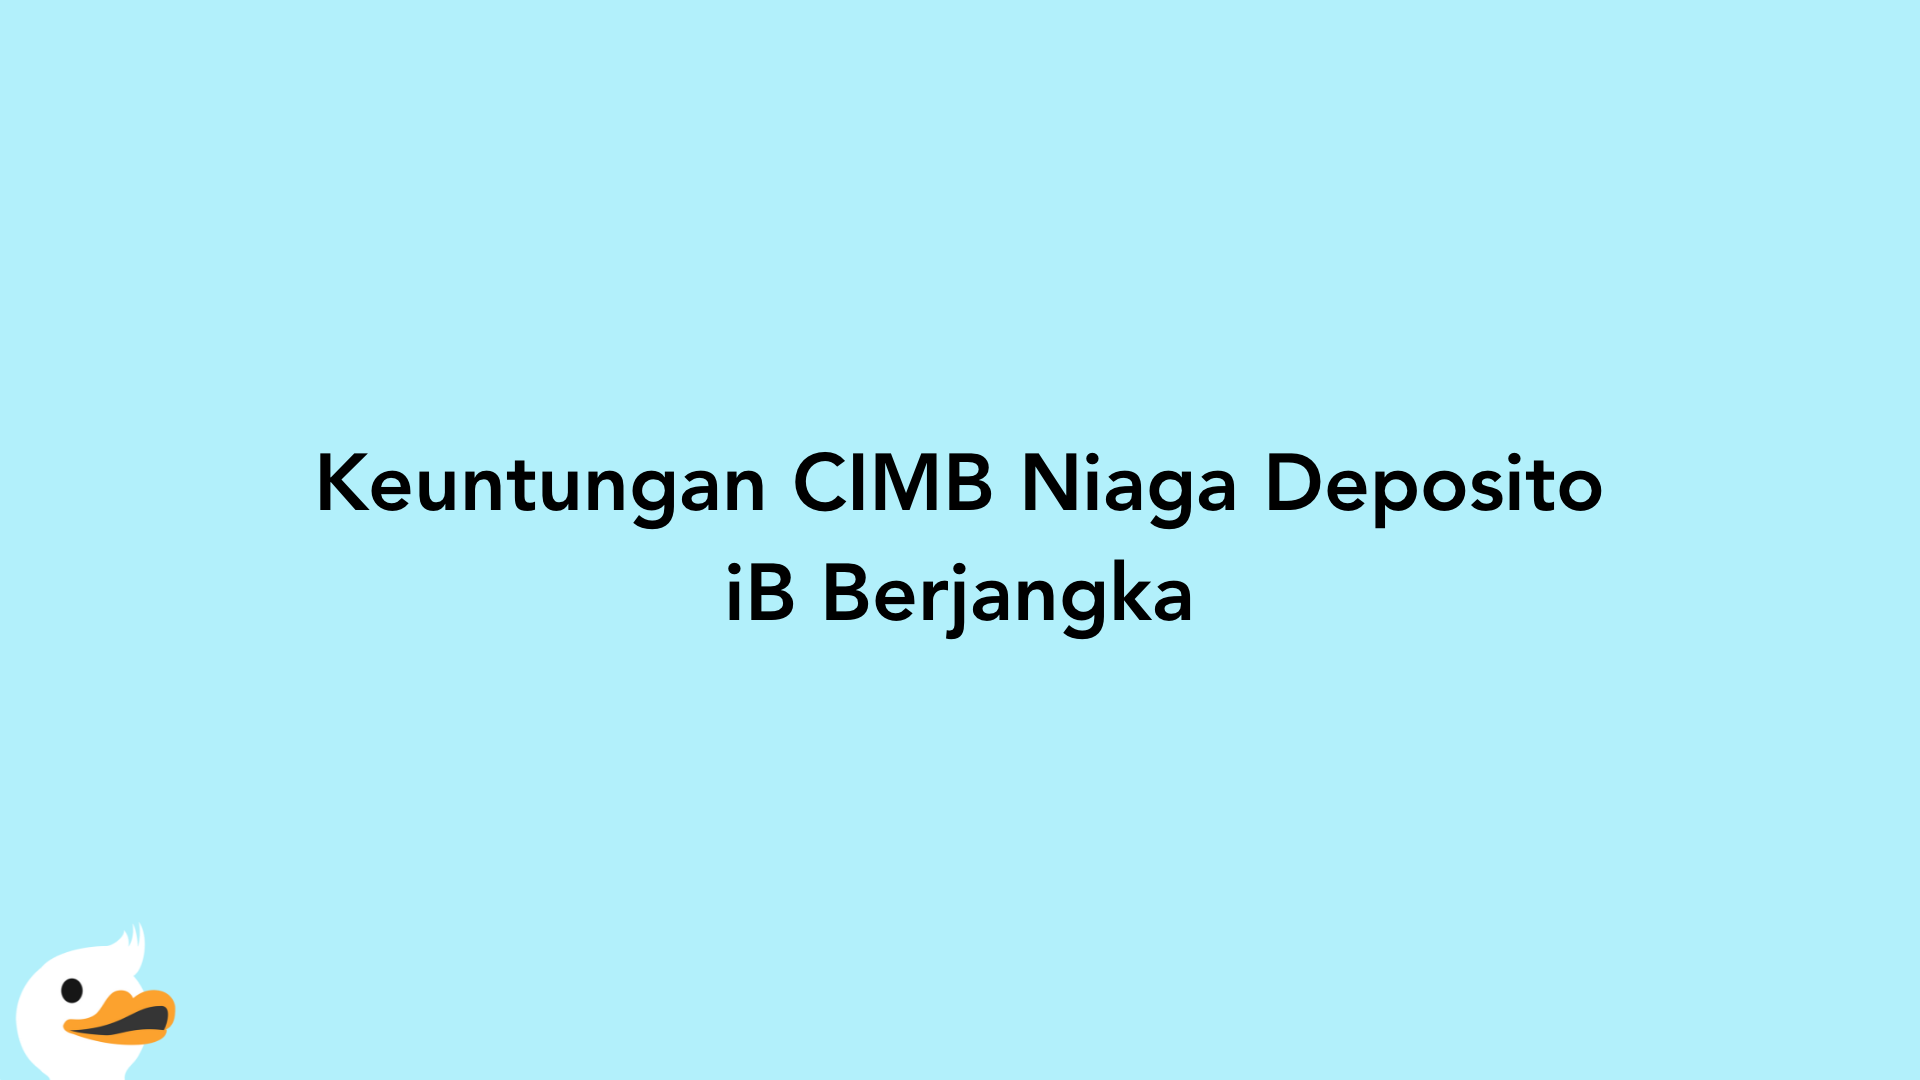 Keuntungan CIMB Niaga Deposito iB Berjangka